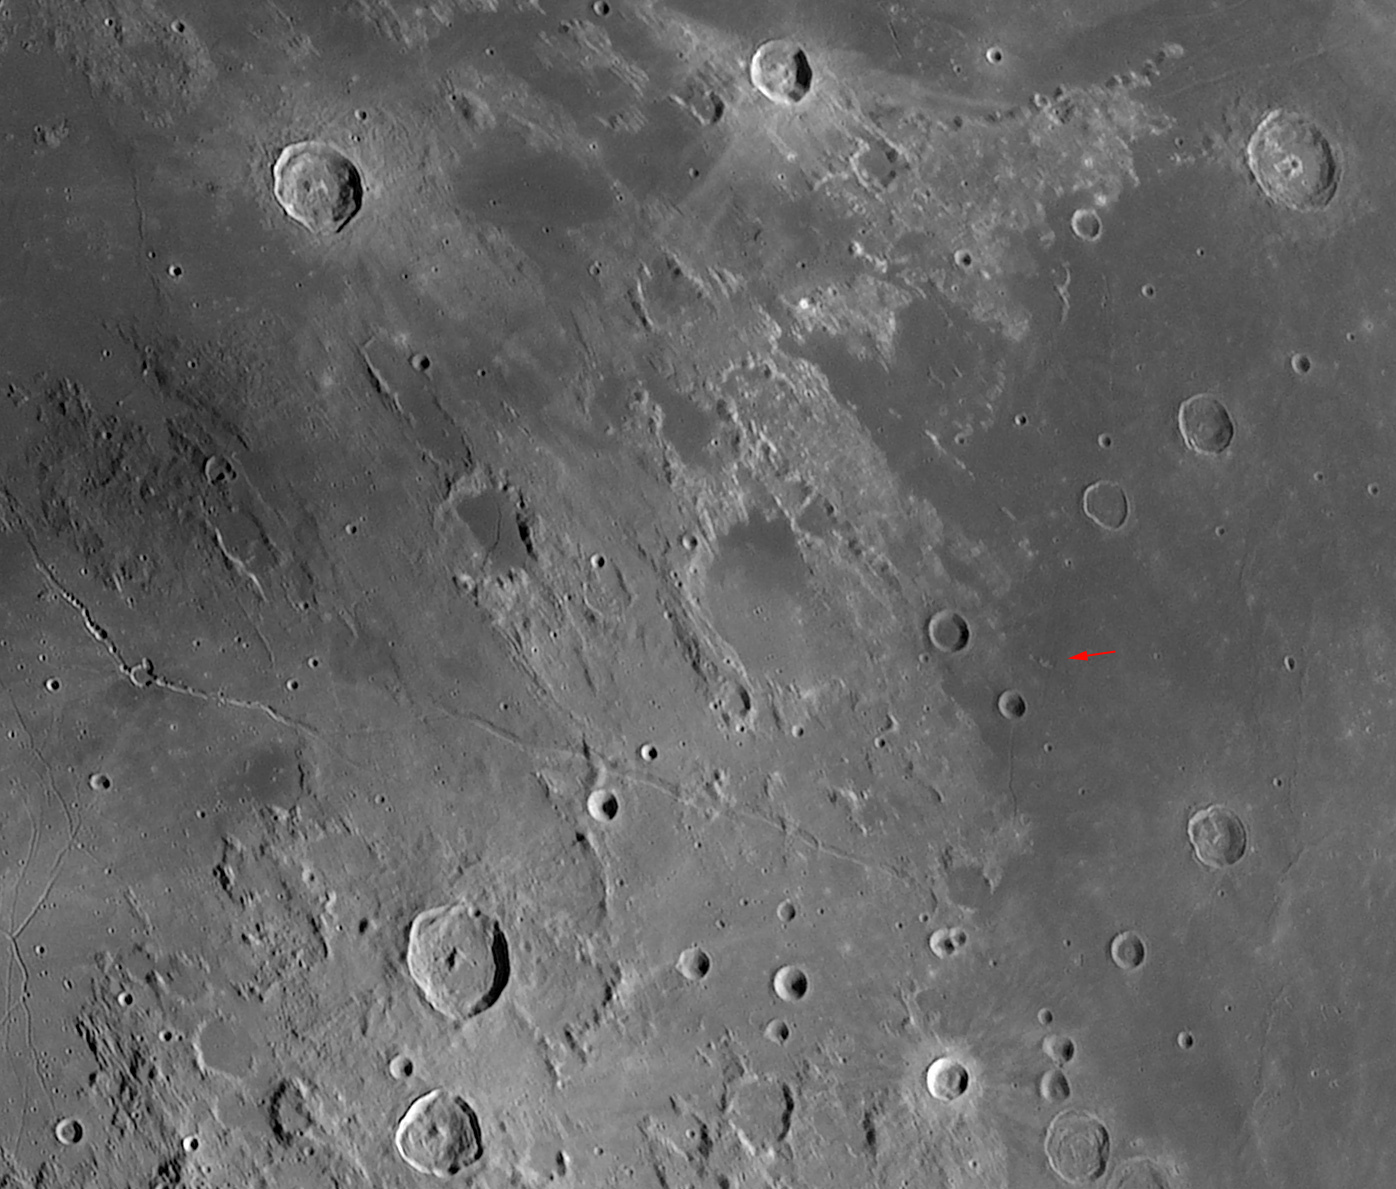 Lune-20210420_Mosa-baV-ASGuy.jpg.0837659b77c4d0a7734ac6c5be02df06.jpg